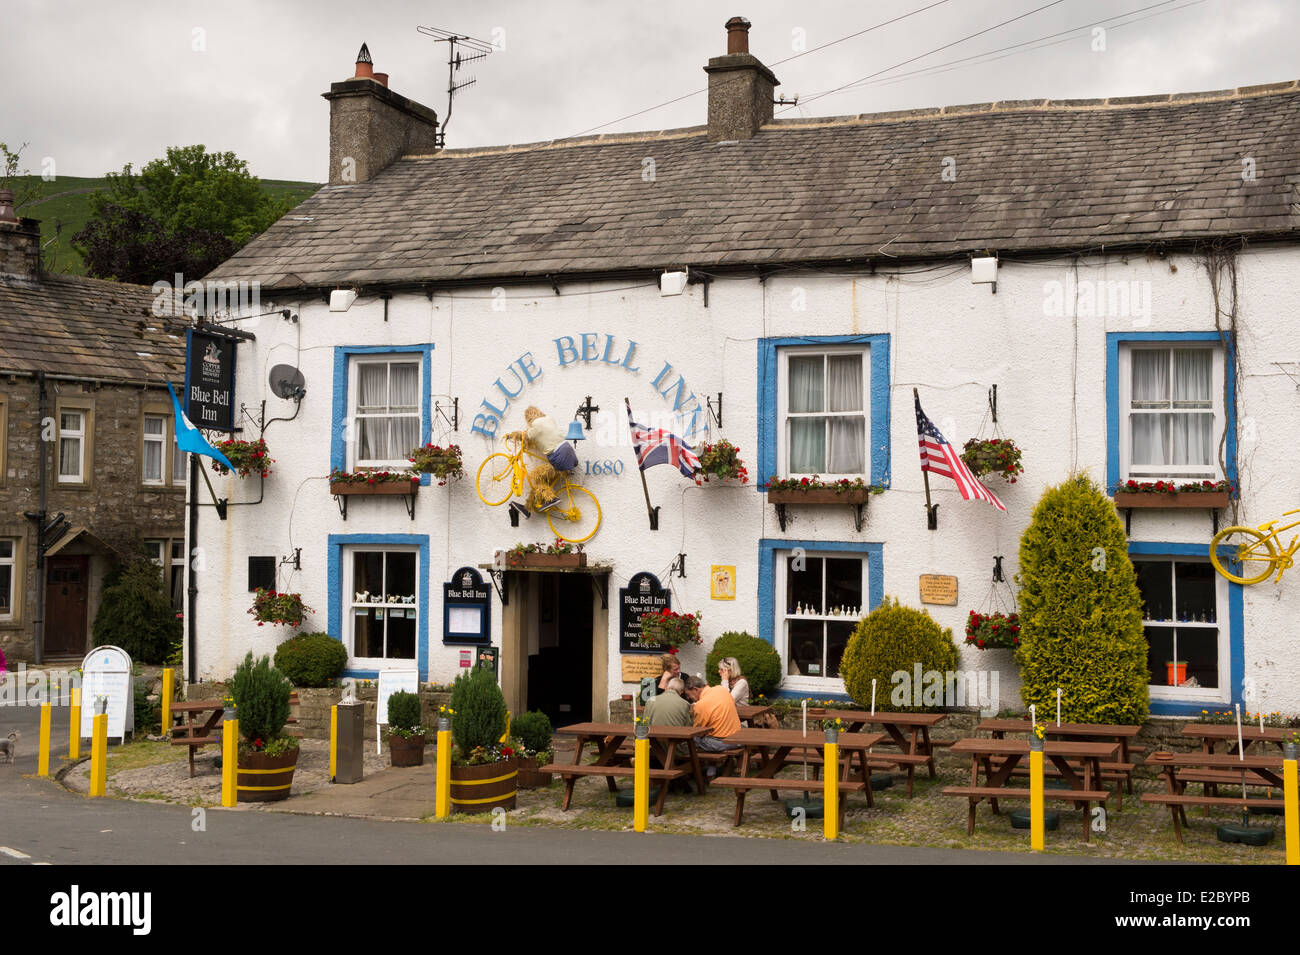 Les gens s'asseoir à table, manger et boire à l'extérieur attrayant, pub anglais traditionnel - The Blue Bell Inn, Kettlewell, village du Yorkshire, England, UK. Banque D'Images